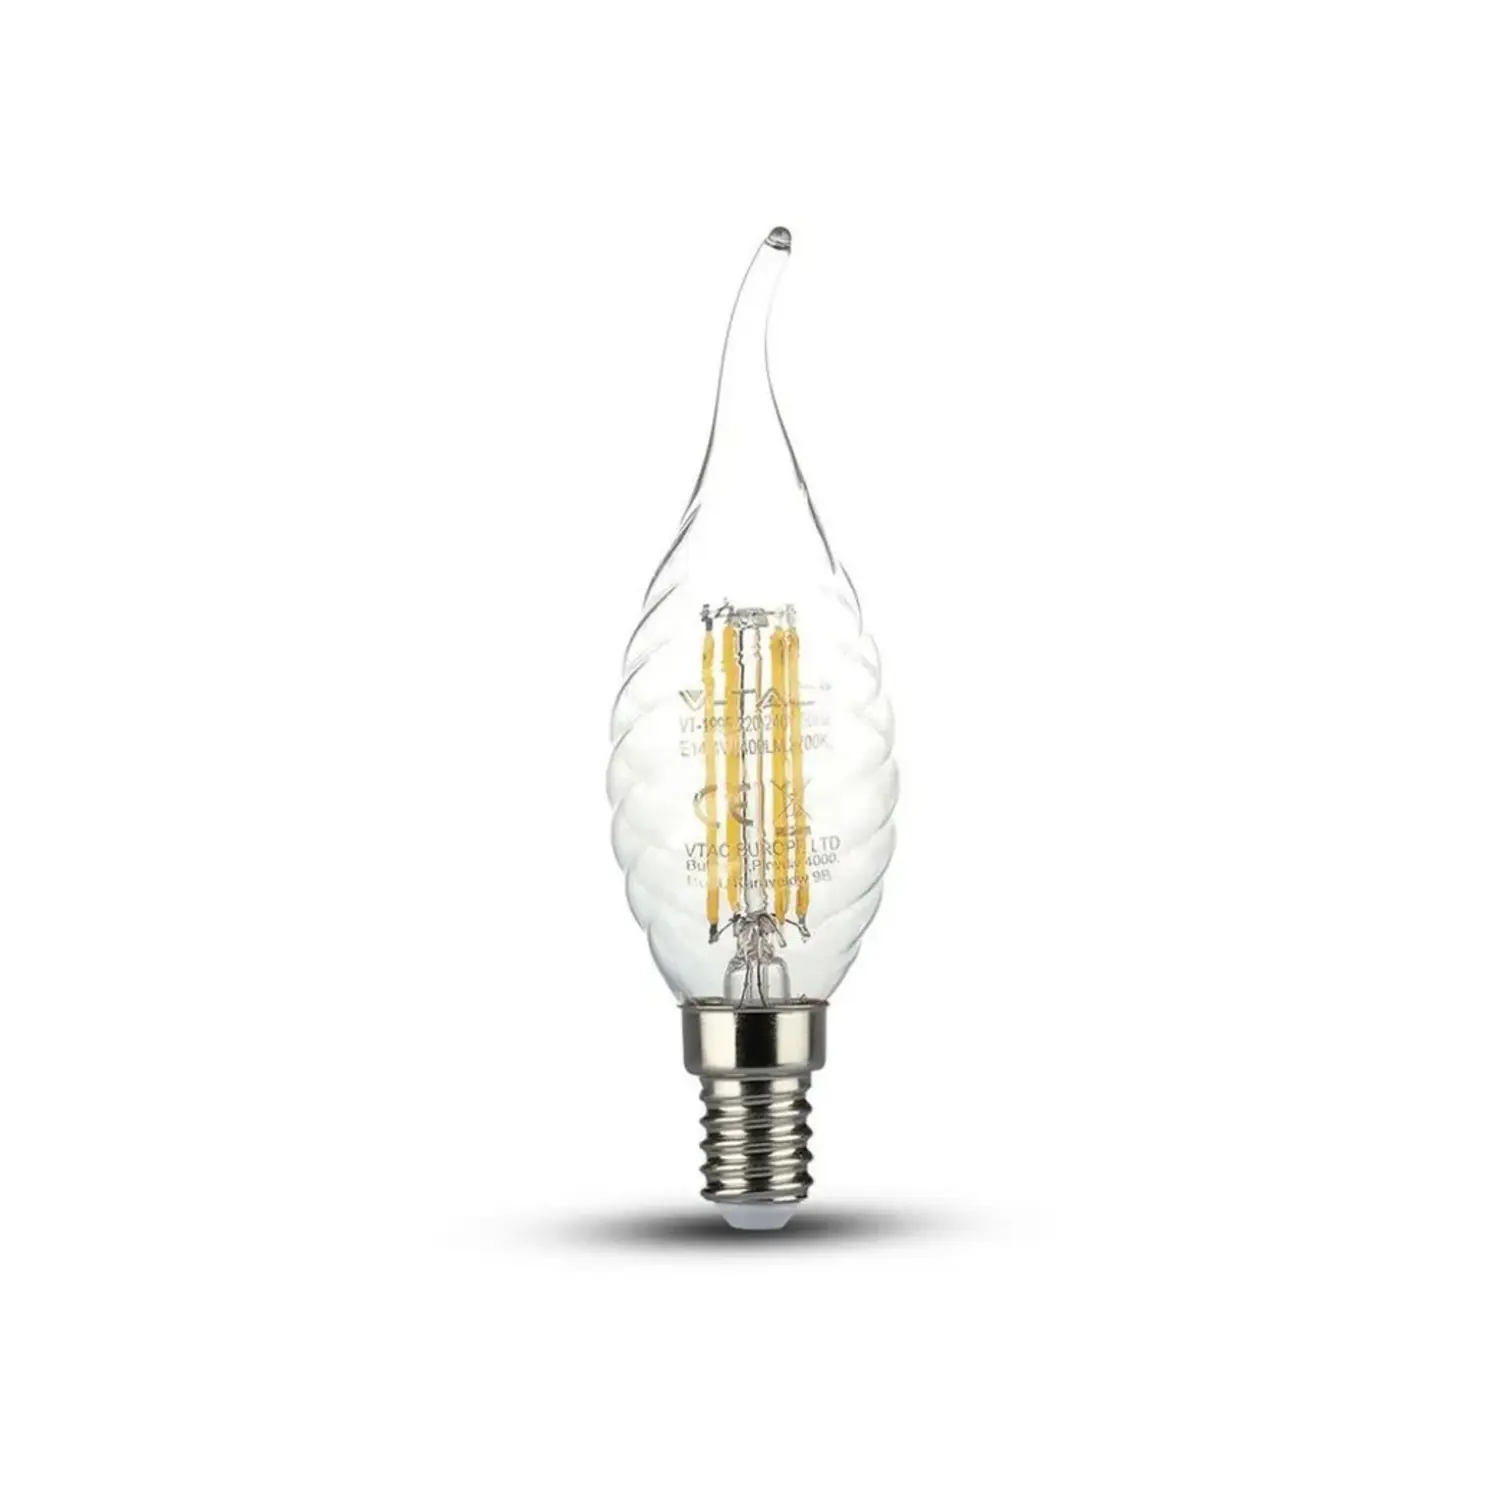 immagine del prodotto lampadina led tortiglione soffio vento fiamma twist e14 4 watt bianco caldo